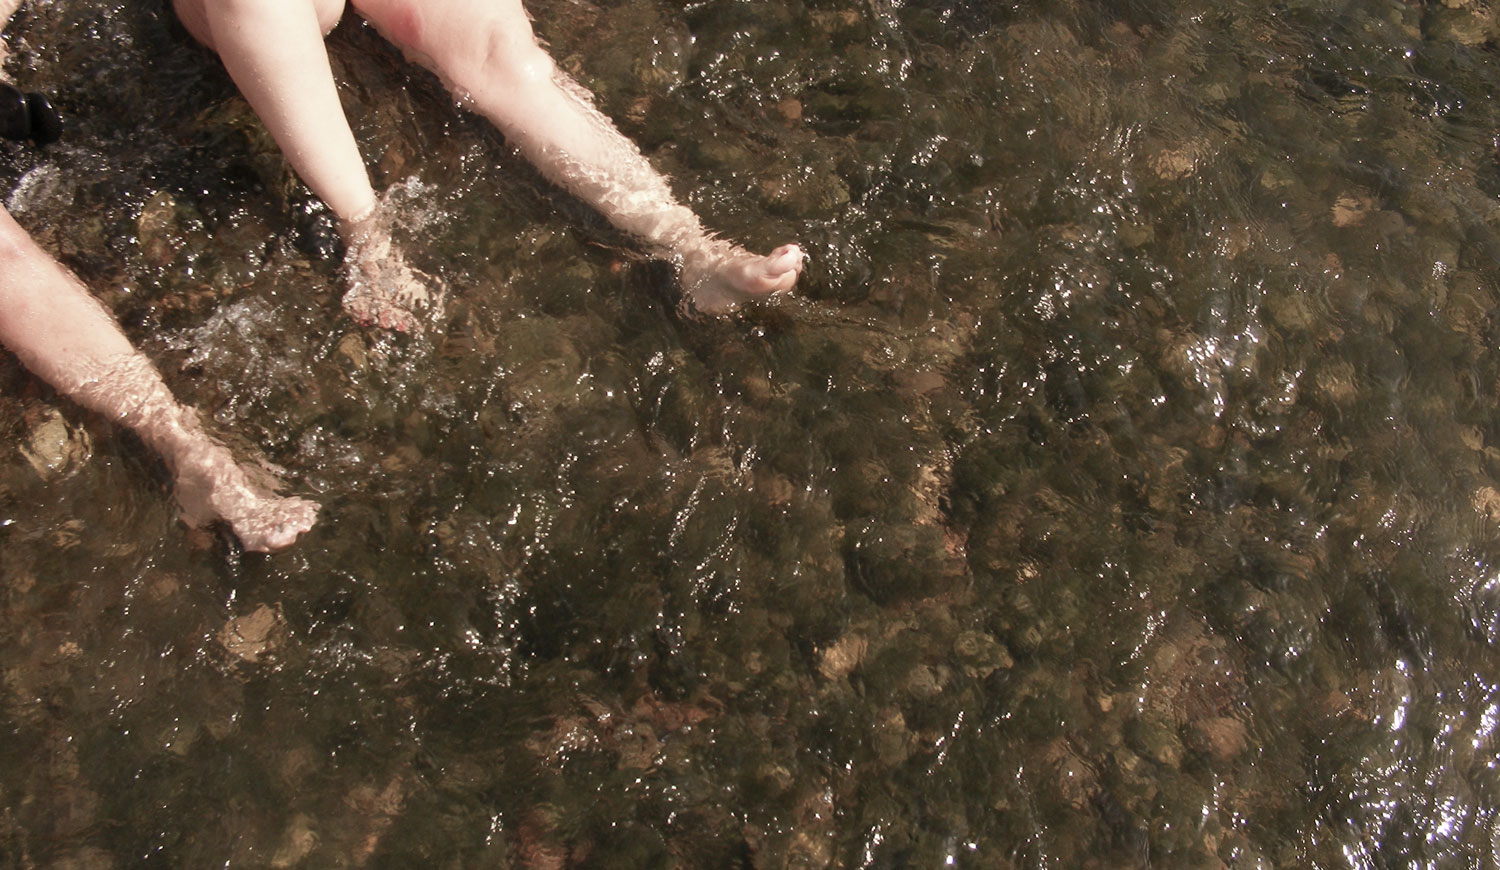 les cames d'una dona i un home en remull al riu Ebre